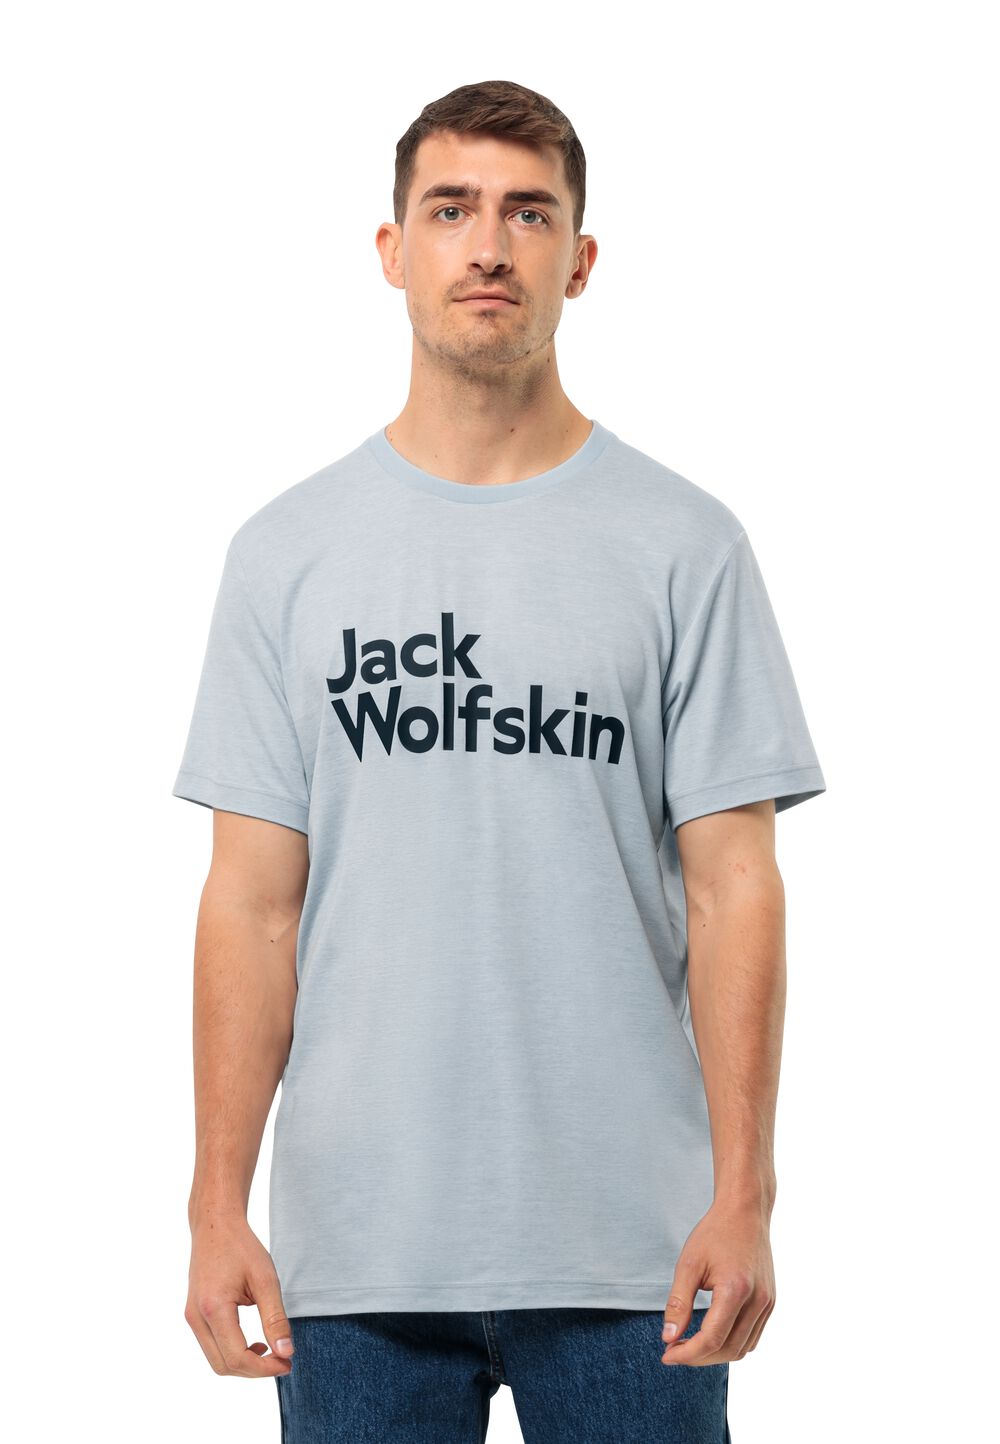 Jack Wolfskin Brand T-Shirt Men Functioneel shirt Heren XXL soft blue soft blue